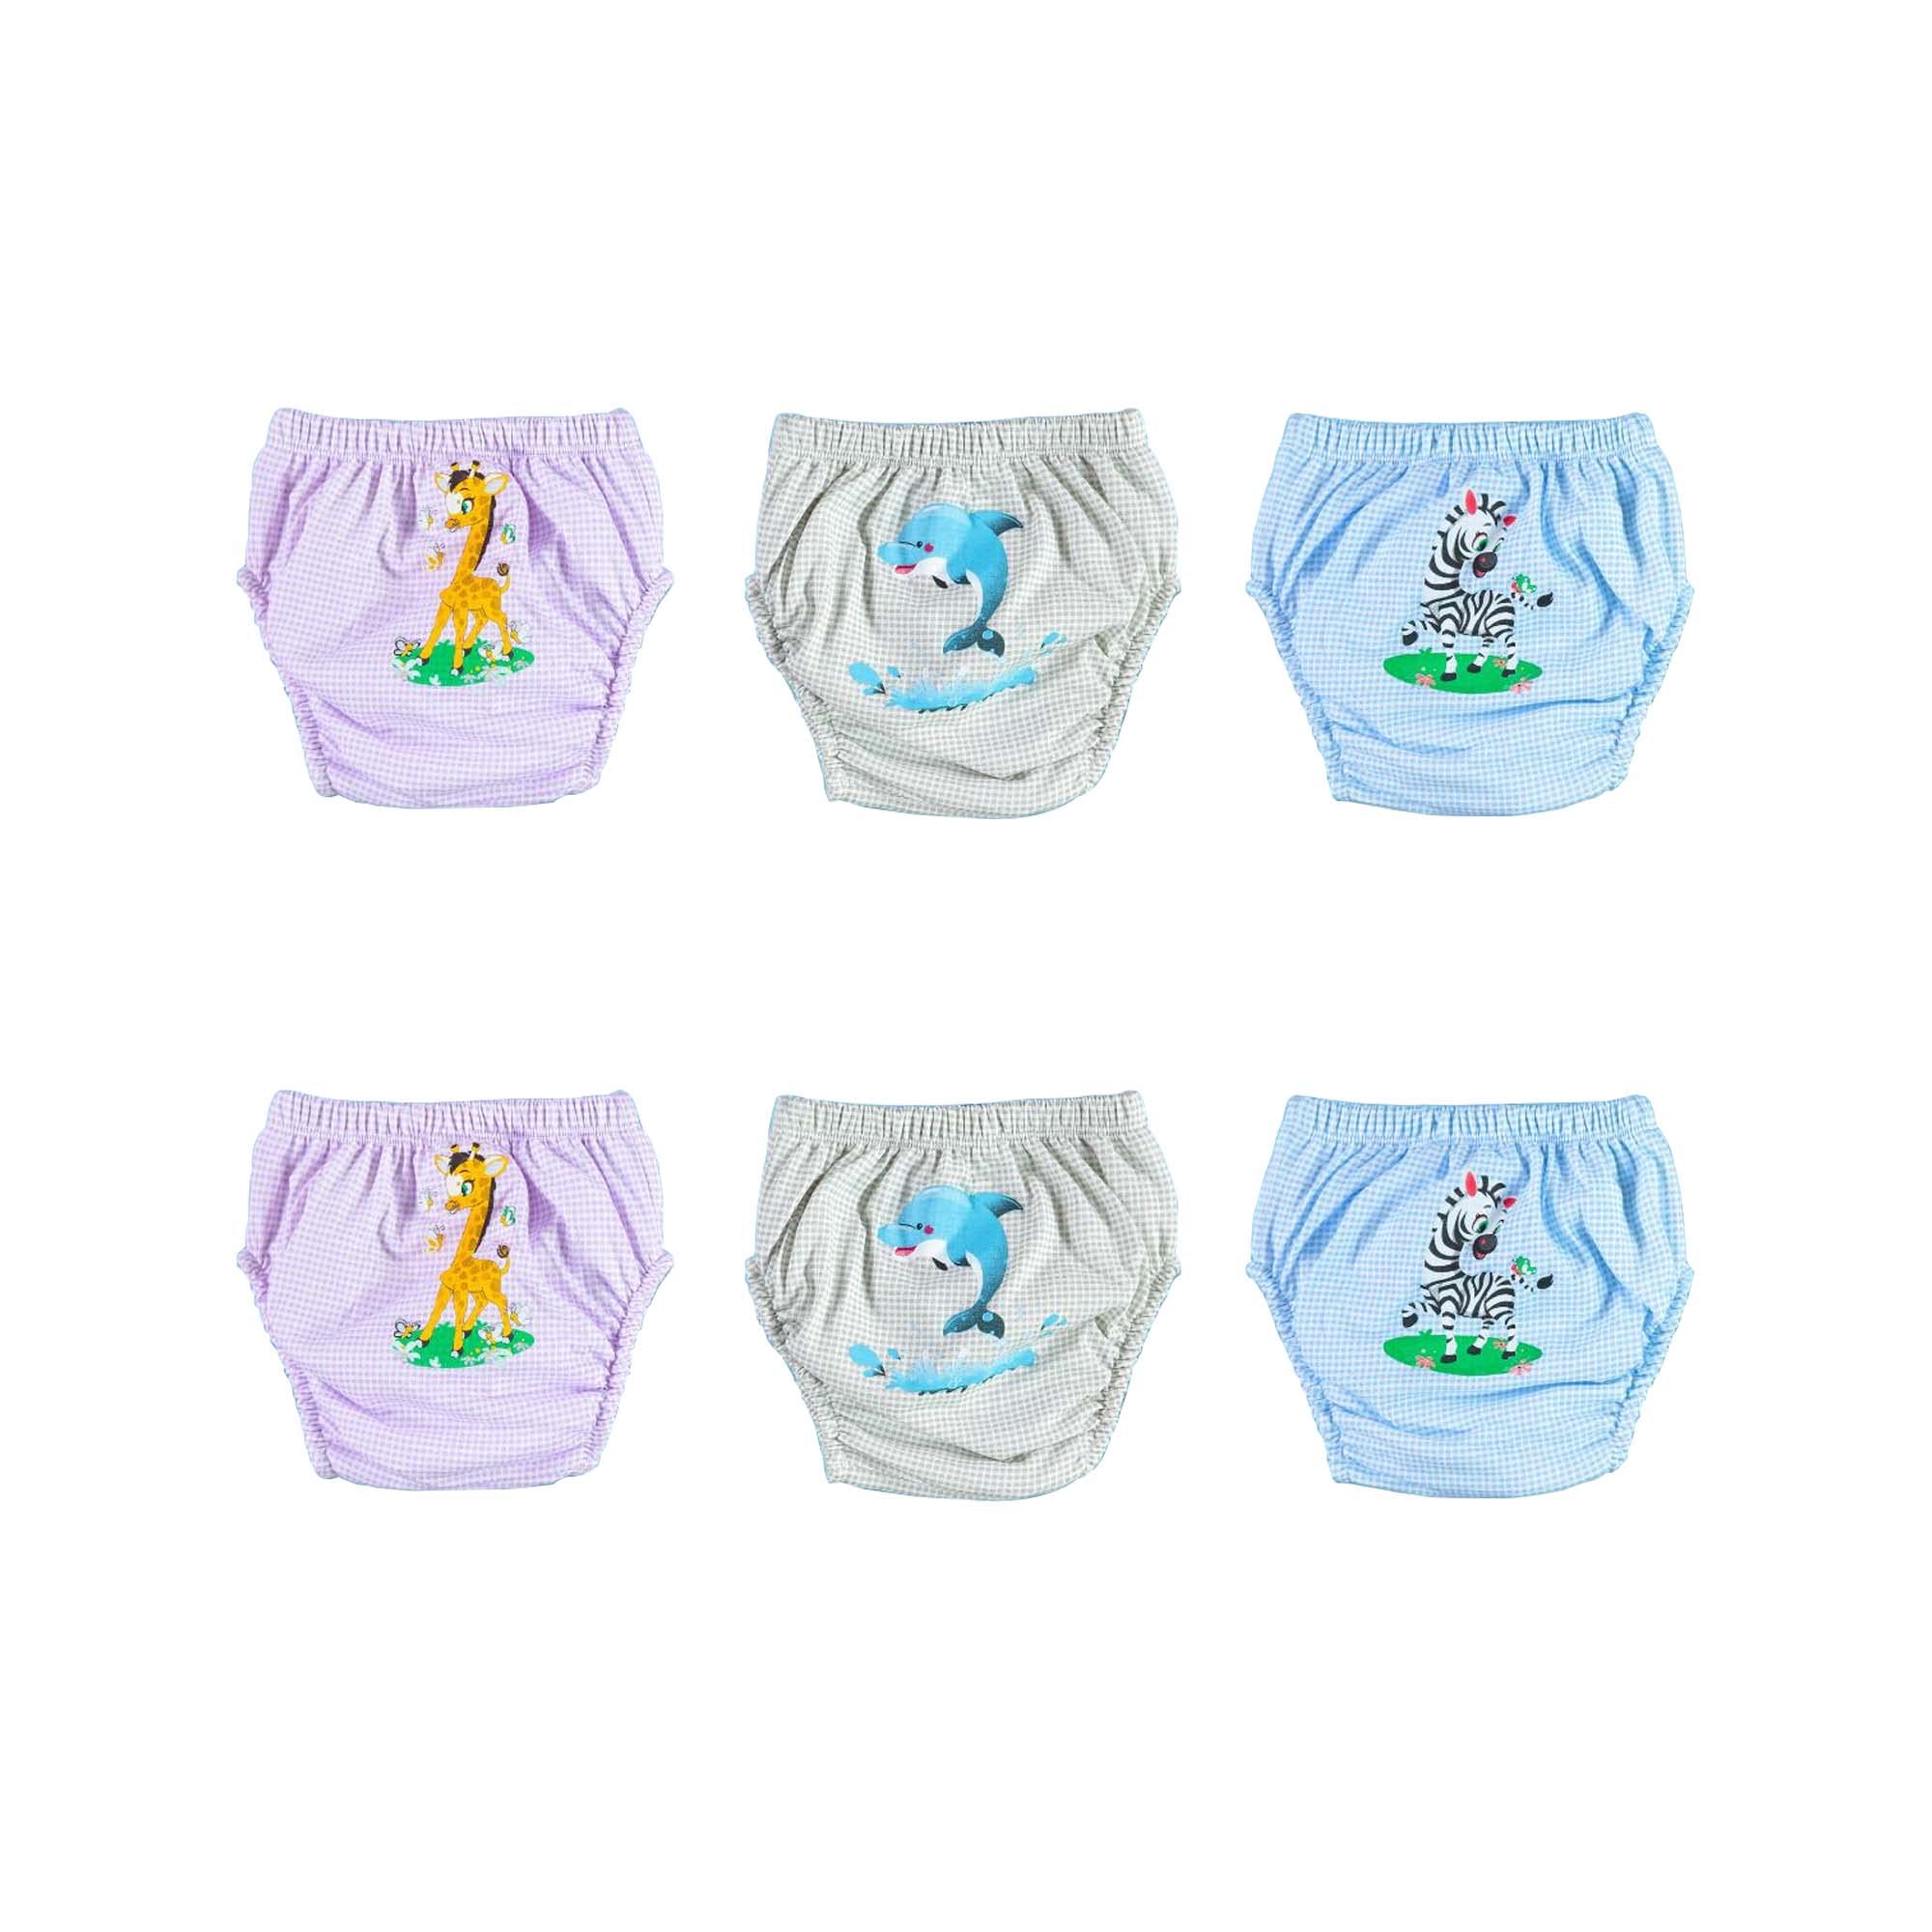 OZYOL Trainerhosen für Tröpfchentraining 6er Pack - Wiederverwendbare Kleinkinder Windelhosen Lernwindeln Trainerwindeln Baby Unterwäsche zum Sauberwerden Toilettentraining (Safari, 90)